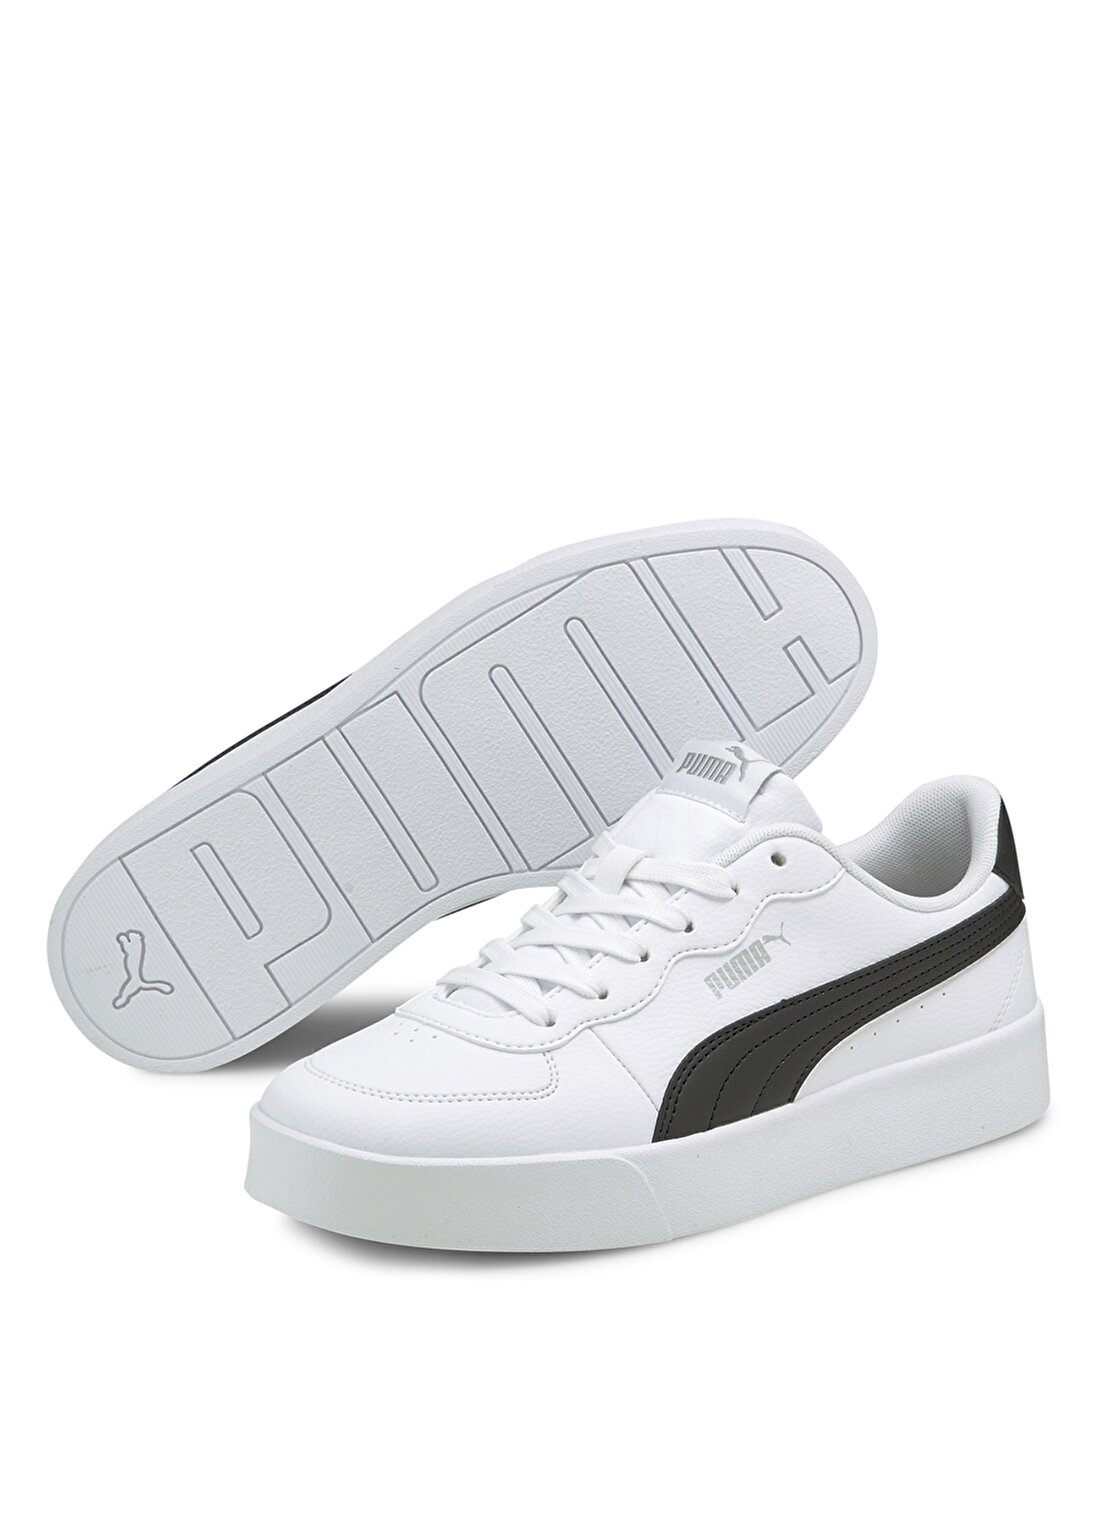 Puma 38014704 Puma Skye Clean Beyaz - Siyah Kadın Lifestyle Ayakkabı